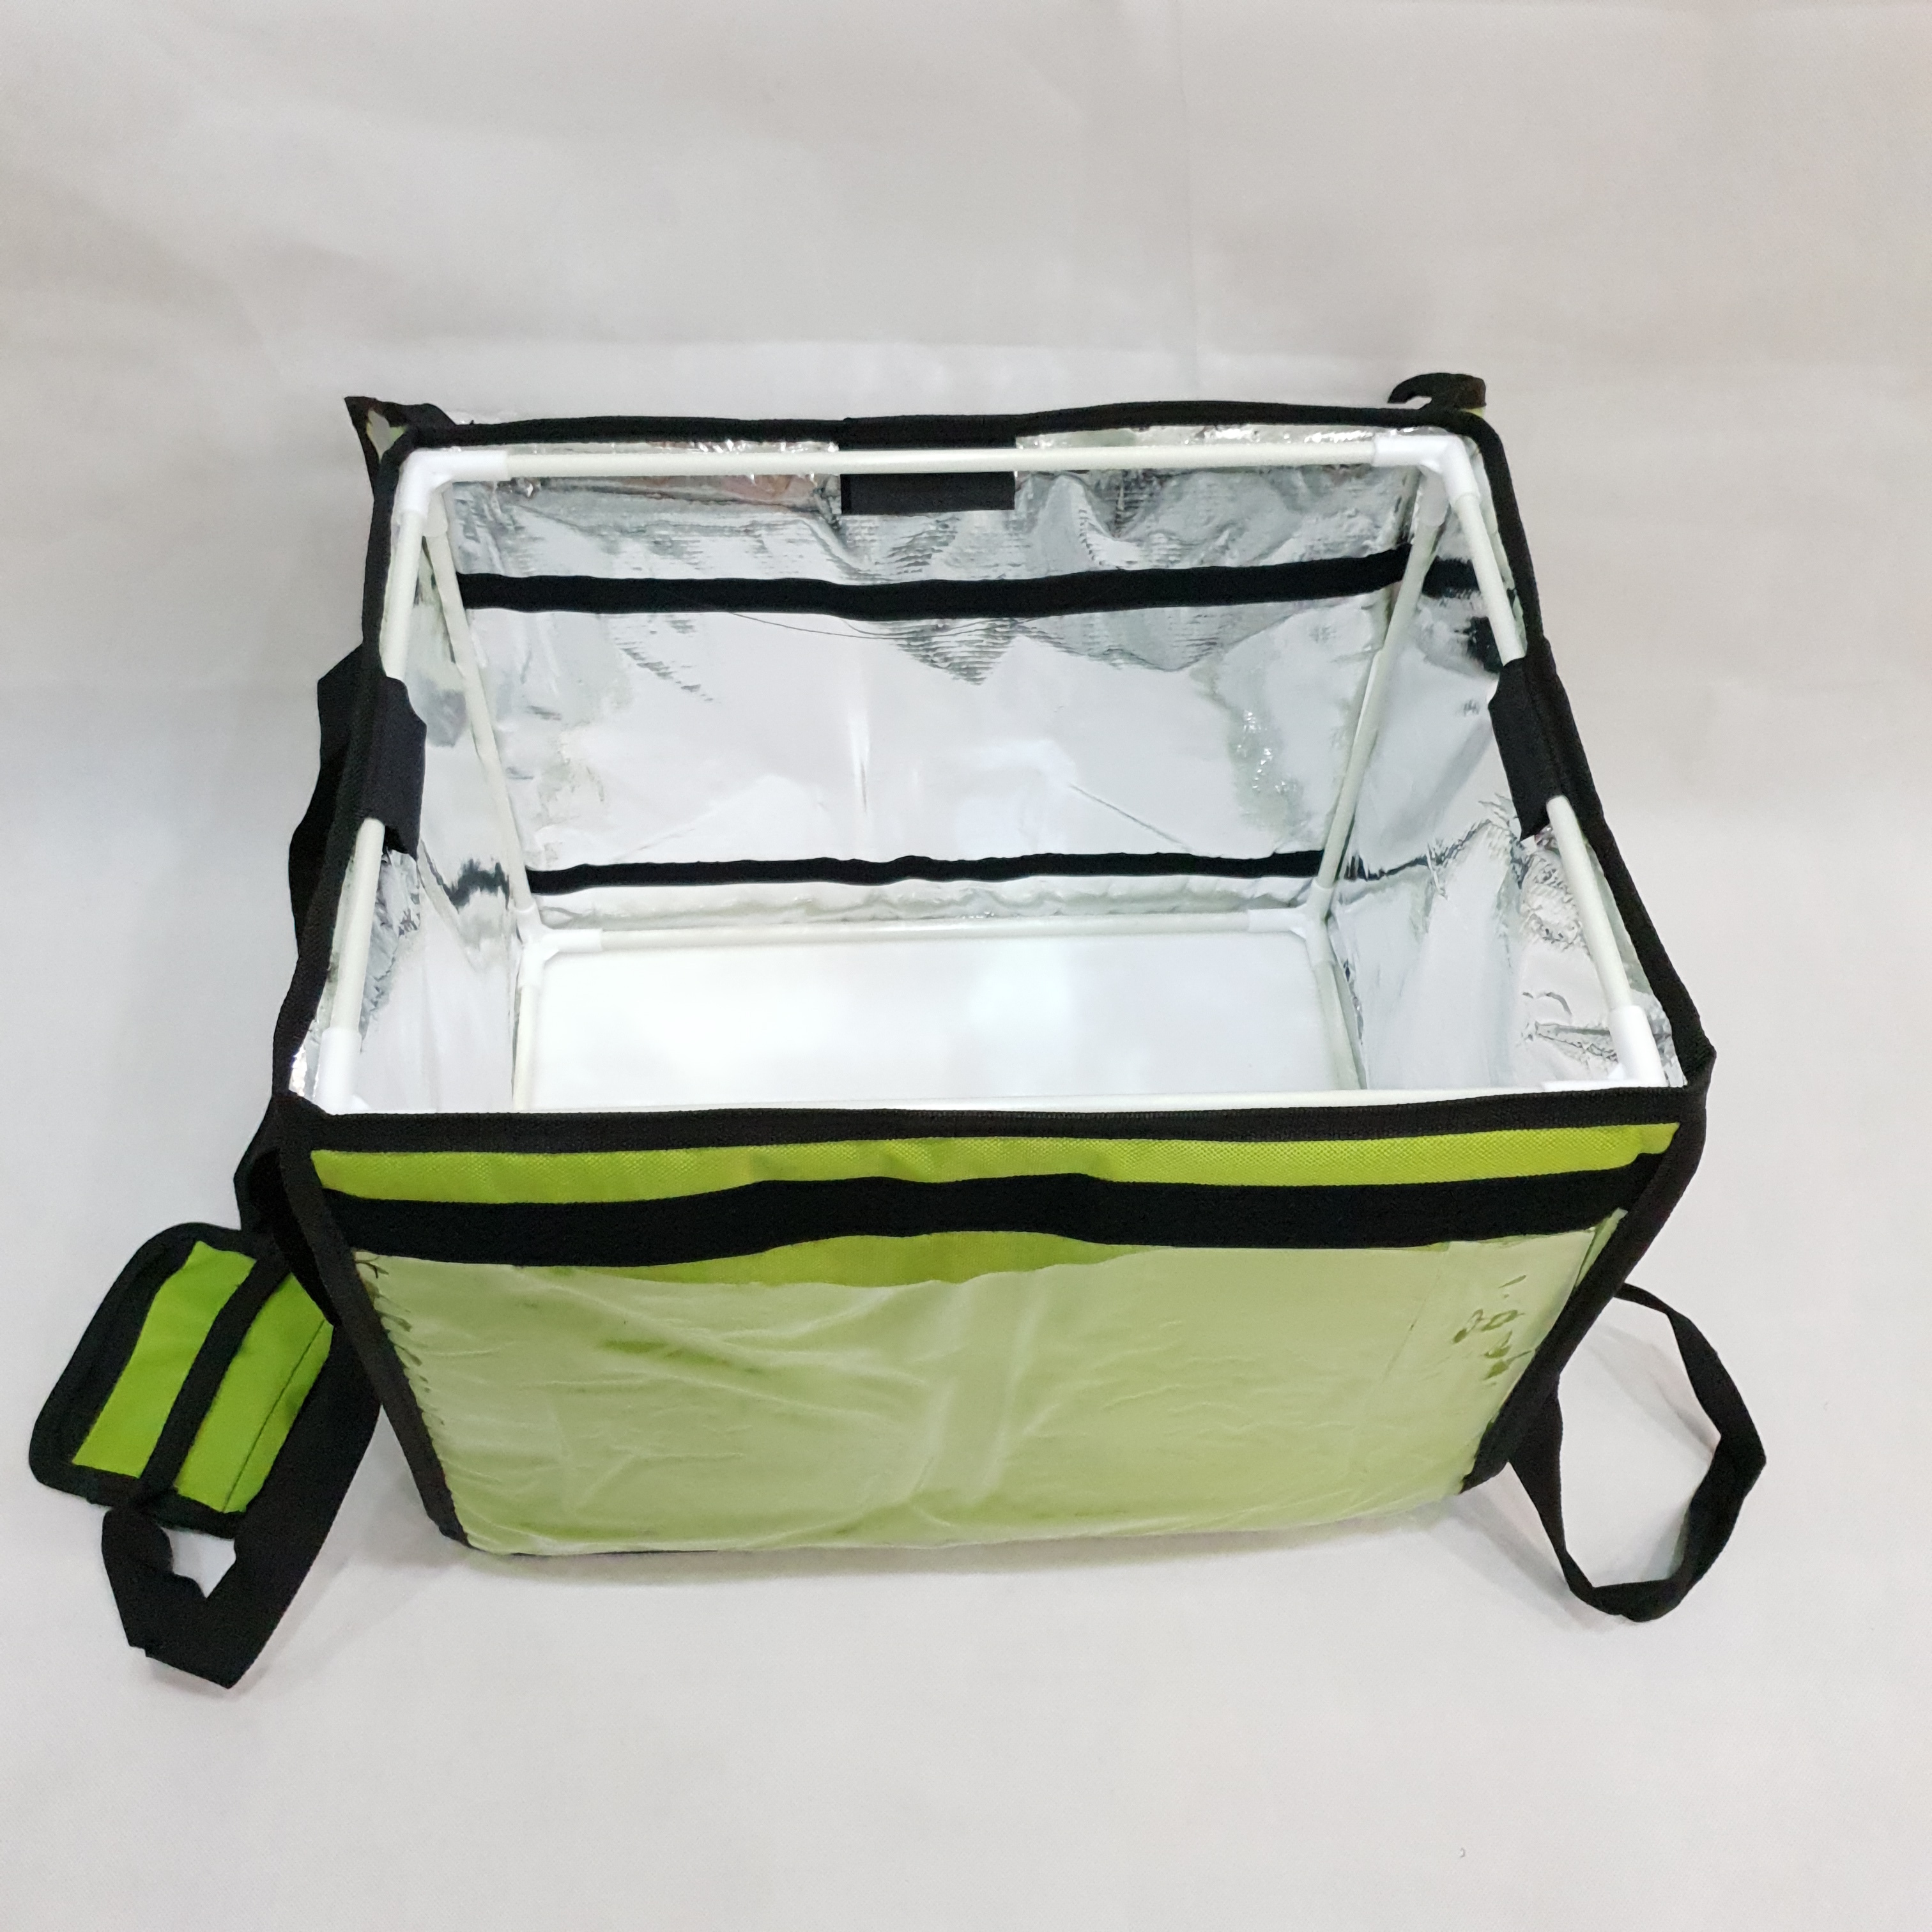 Túi giữ nhiệt giao hàng 44L xanh lá